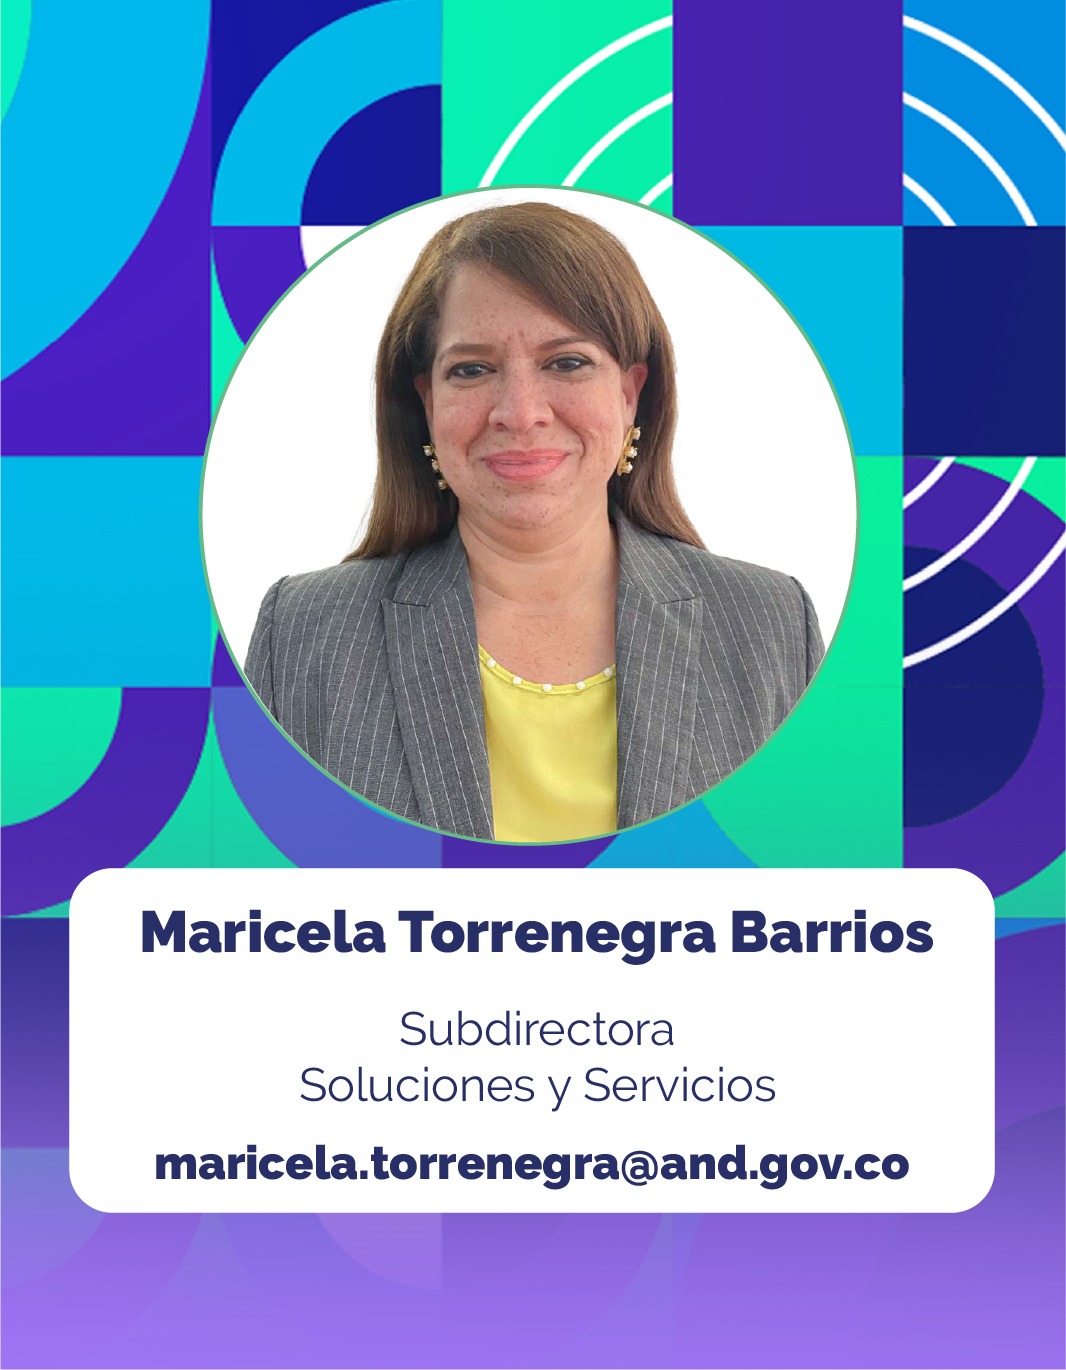 Foto de Maricela Torrenegra Barrios, Subdirectora Soluciones y Servicios de la Corporación Agencia Nacional de Gobierno Digital - AND